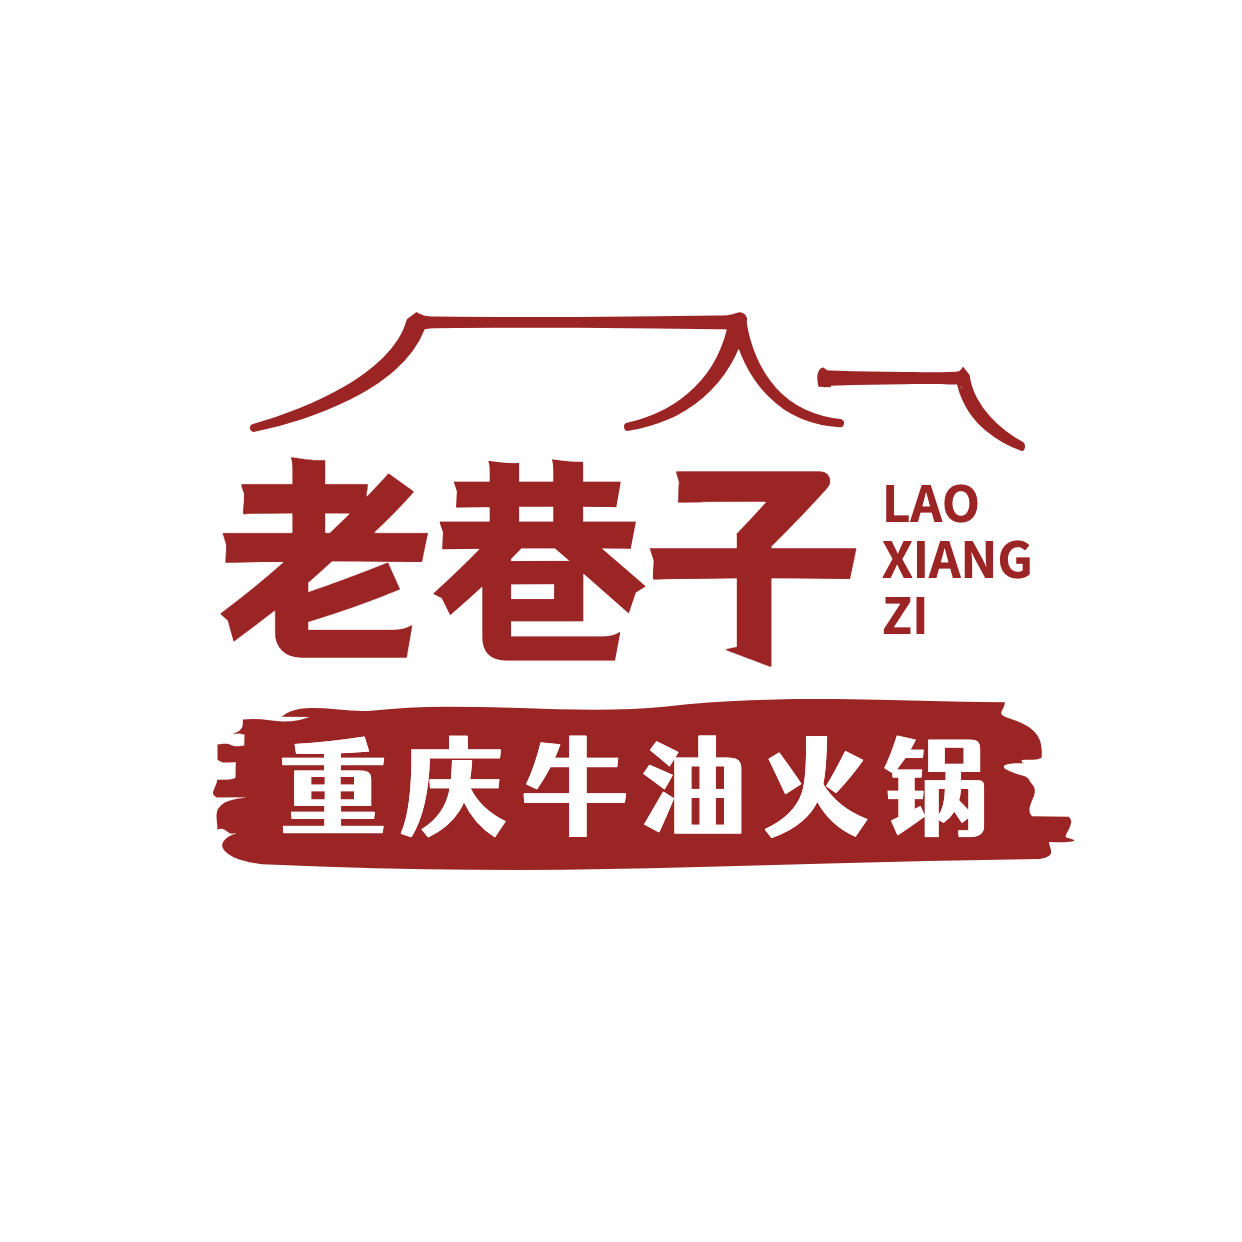 火锅中餐品牌宣传LOGO简约微信头像预览效果